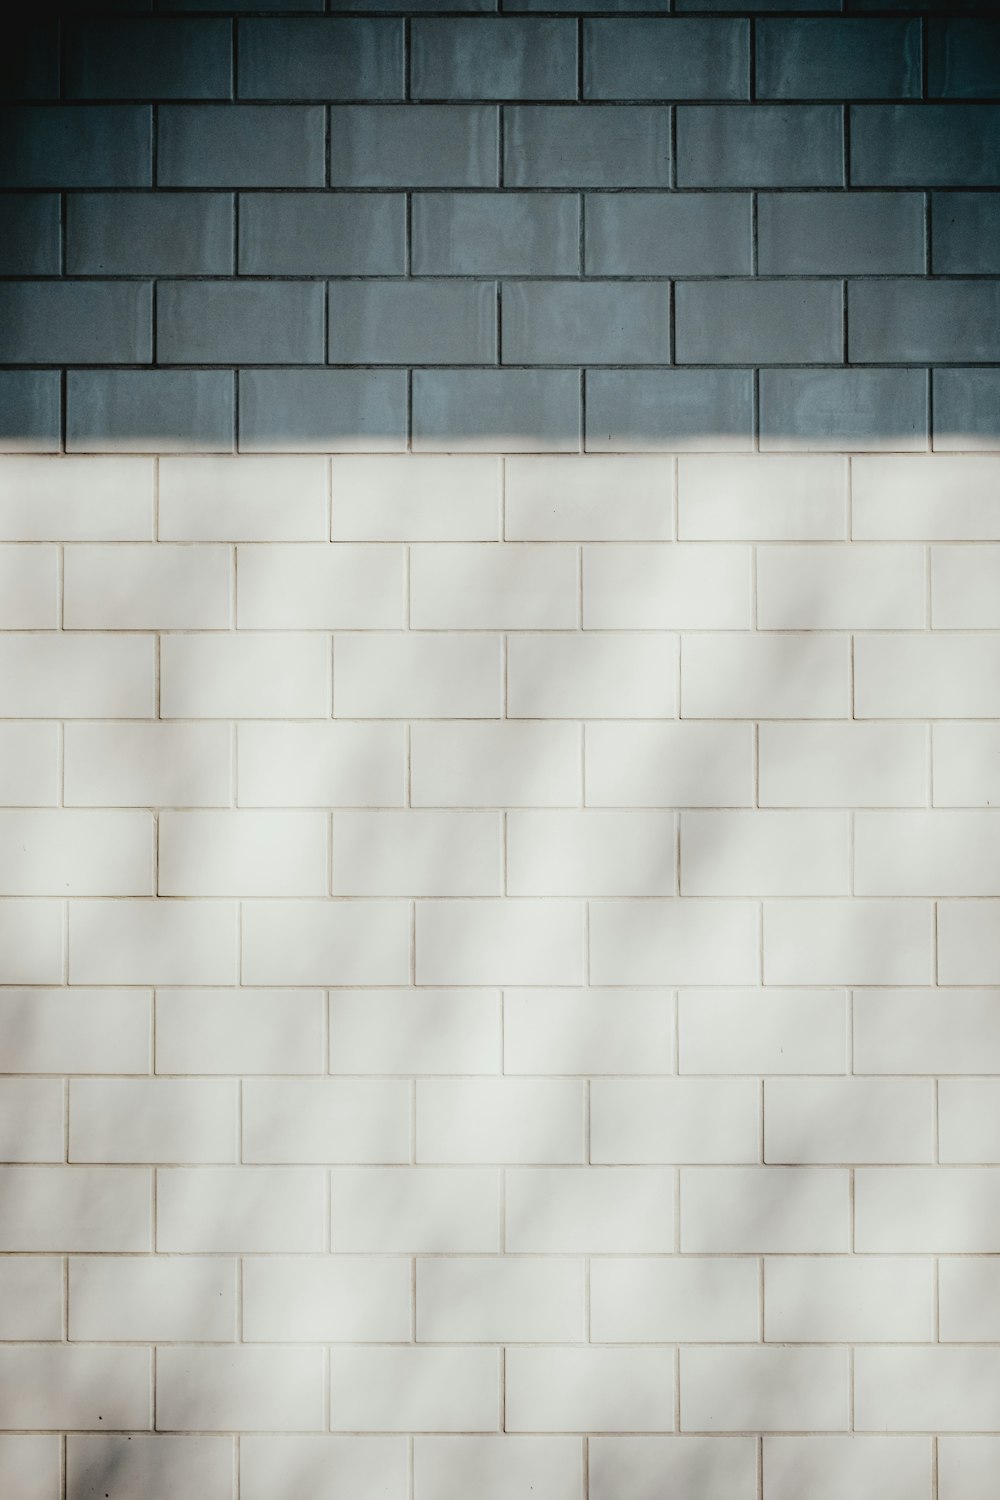 white brick wall photo – Free Pattern Image on Unsplash